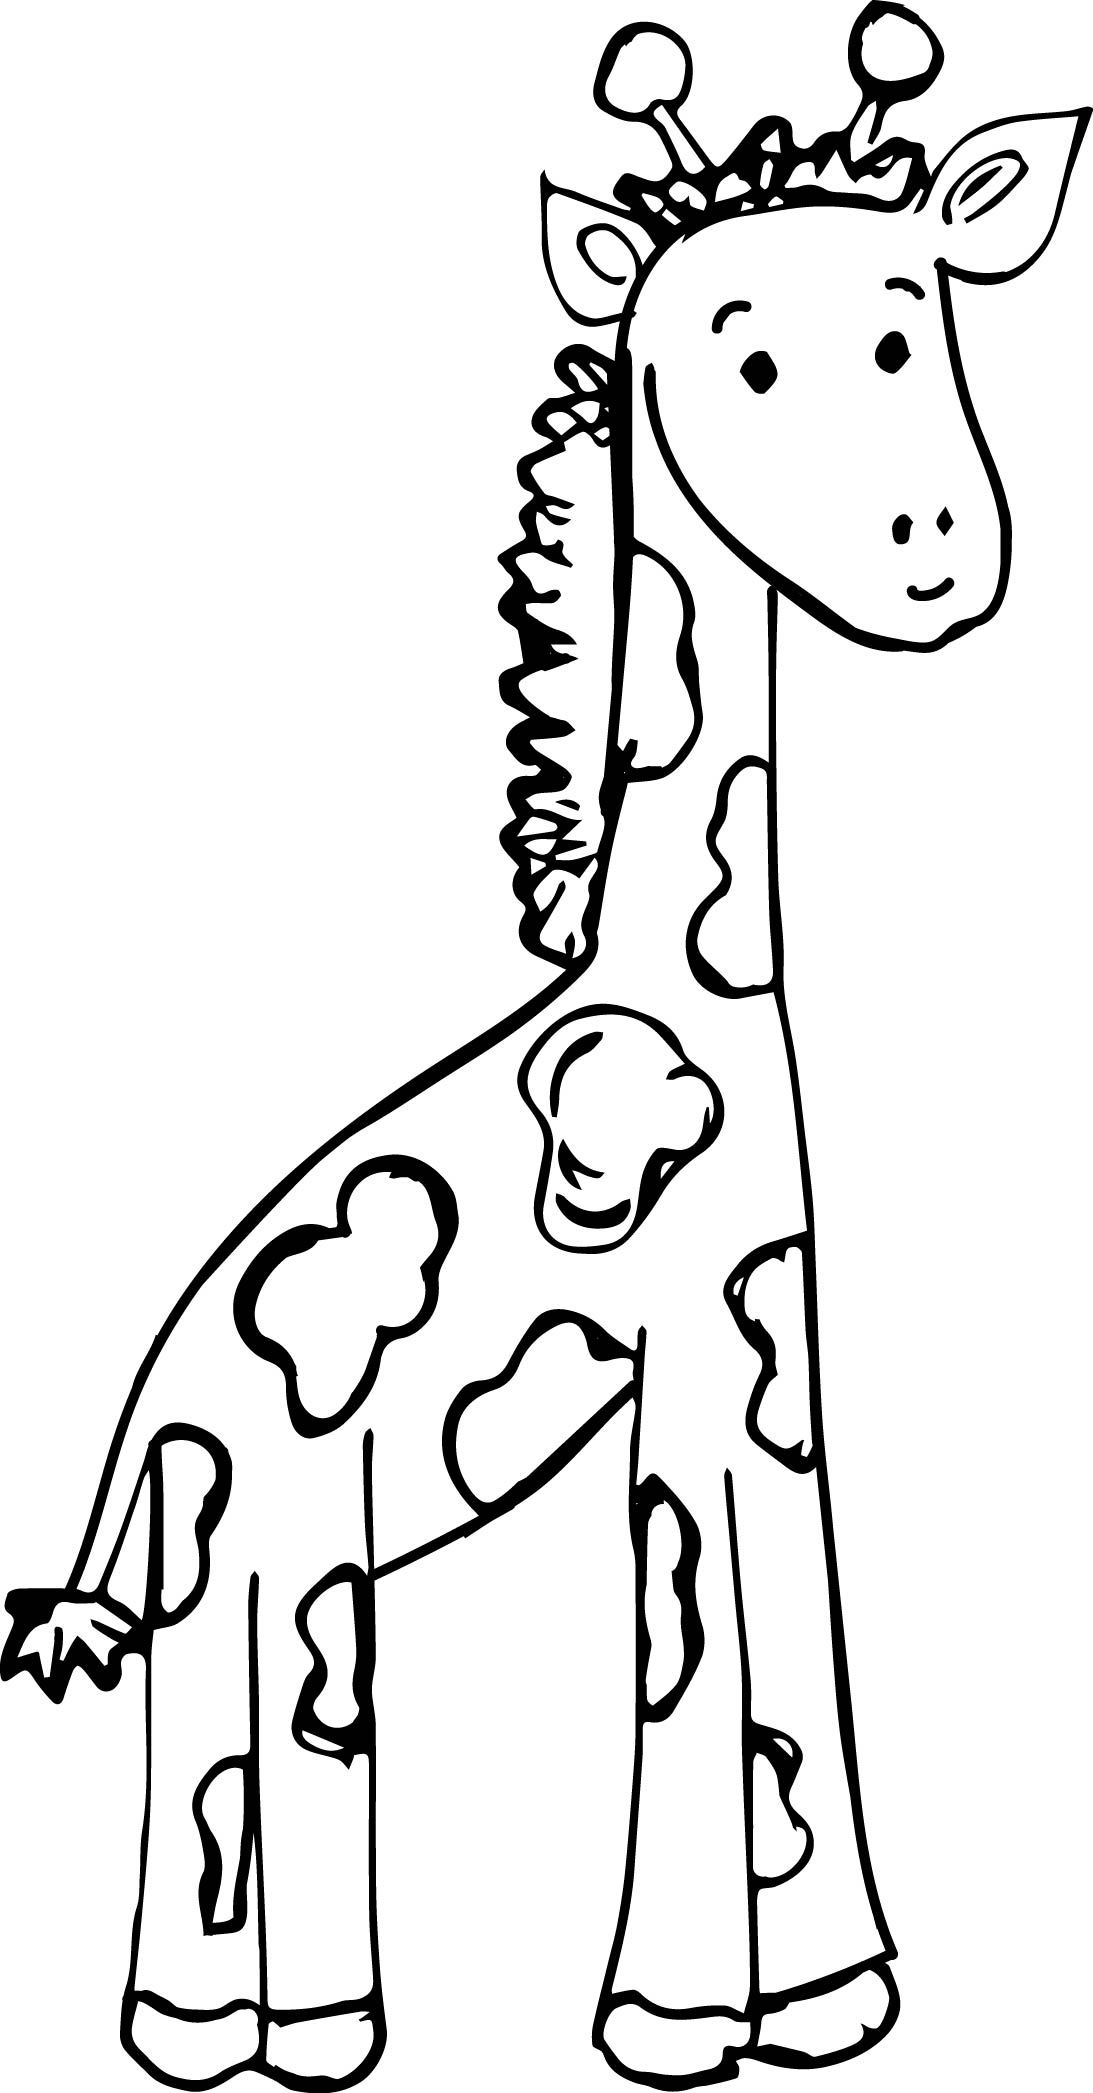 Слон и Жираф раскраска